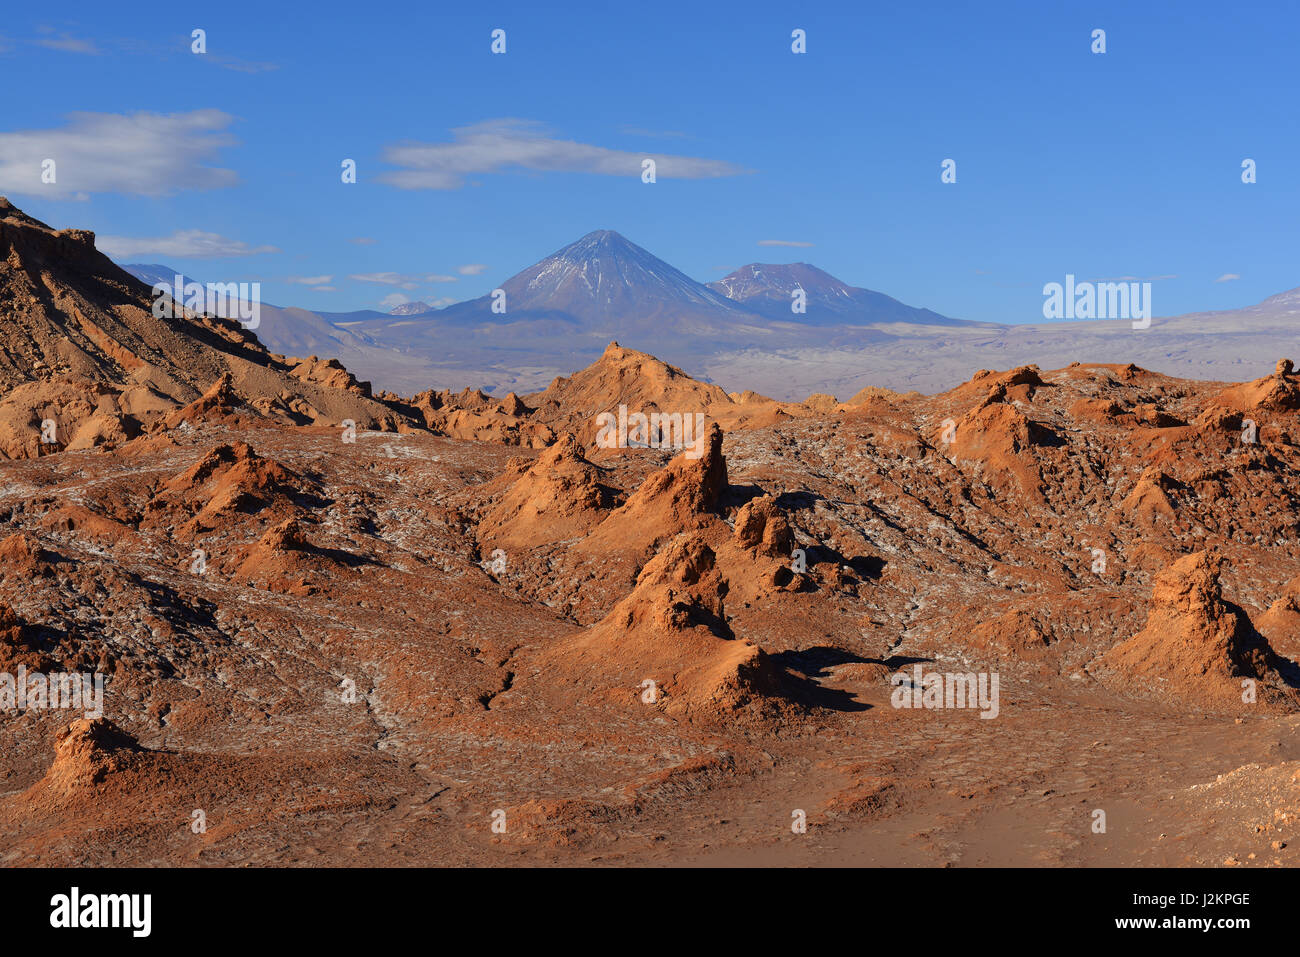 Desert landscape in the Moon Valley of the Atacama desert near San Pedro de Atacama with a view over the Licancabur volcano, North Chile. Stock Photo